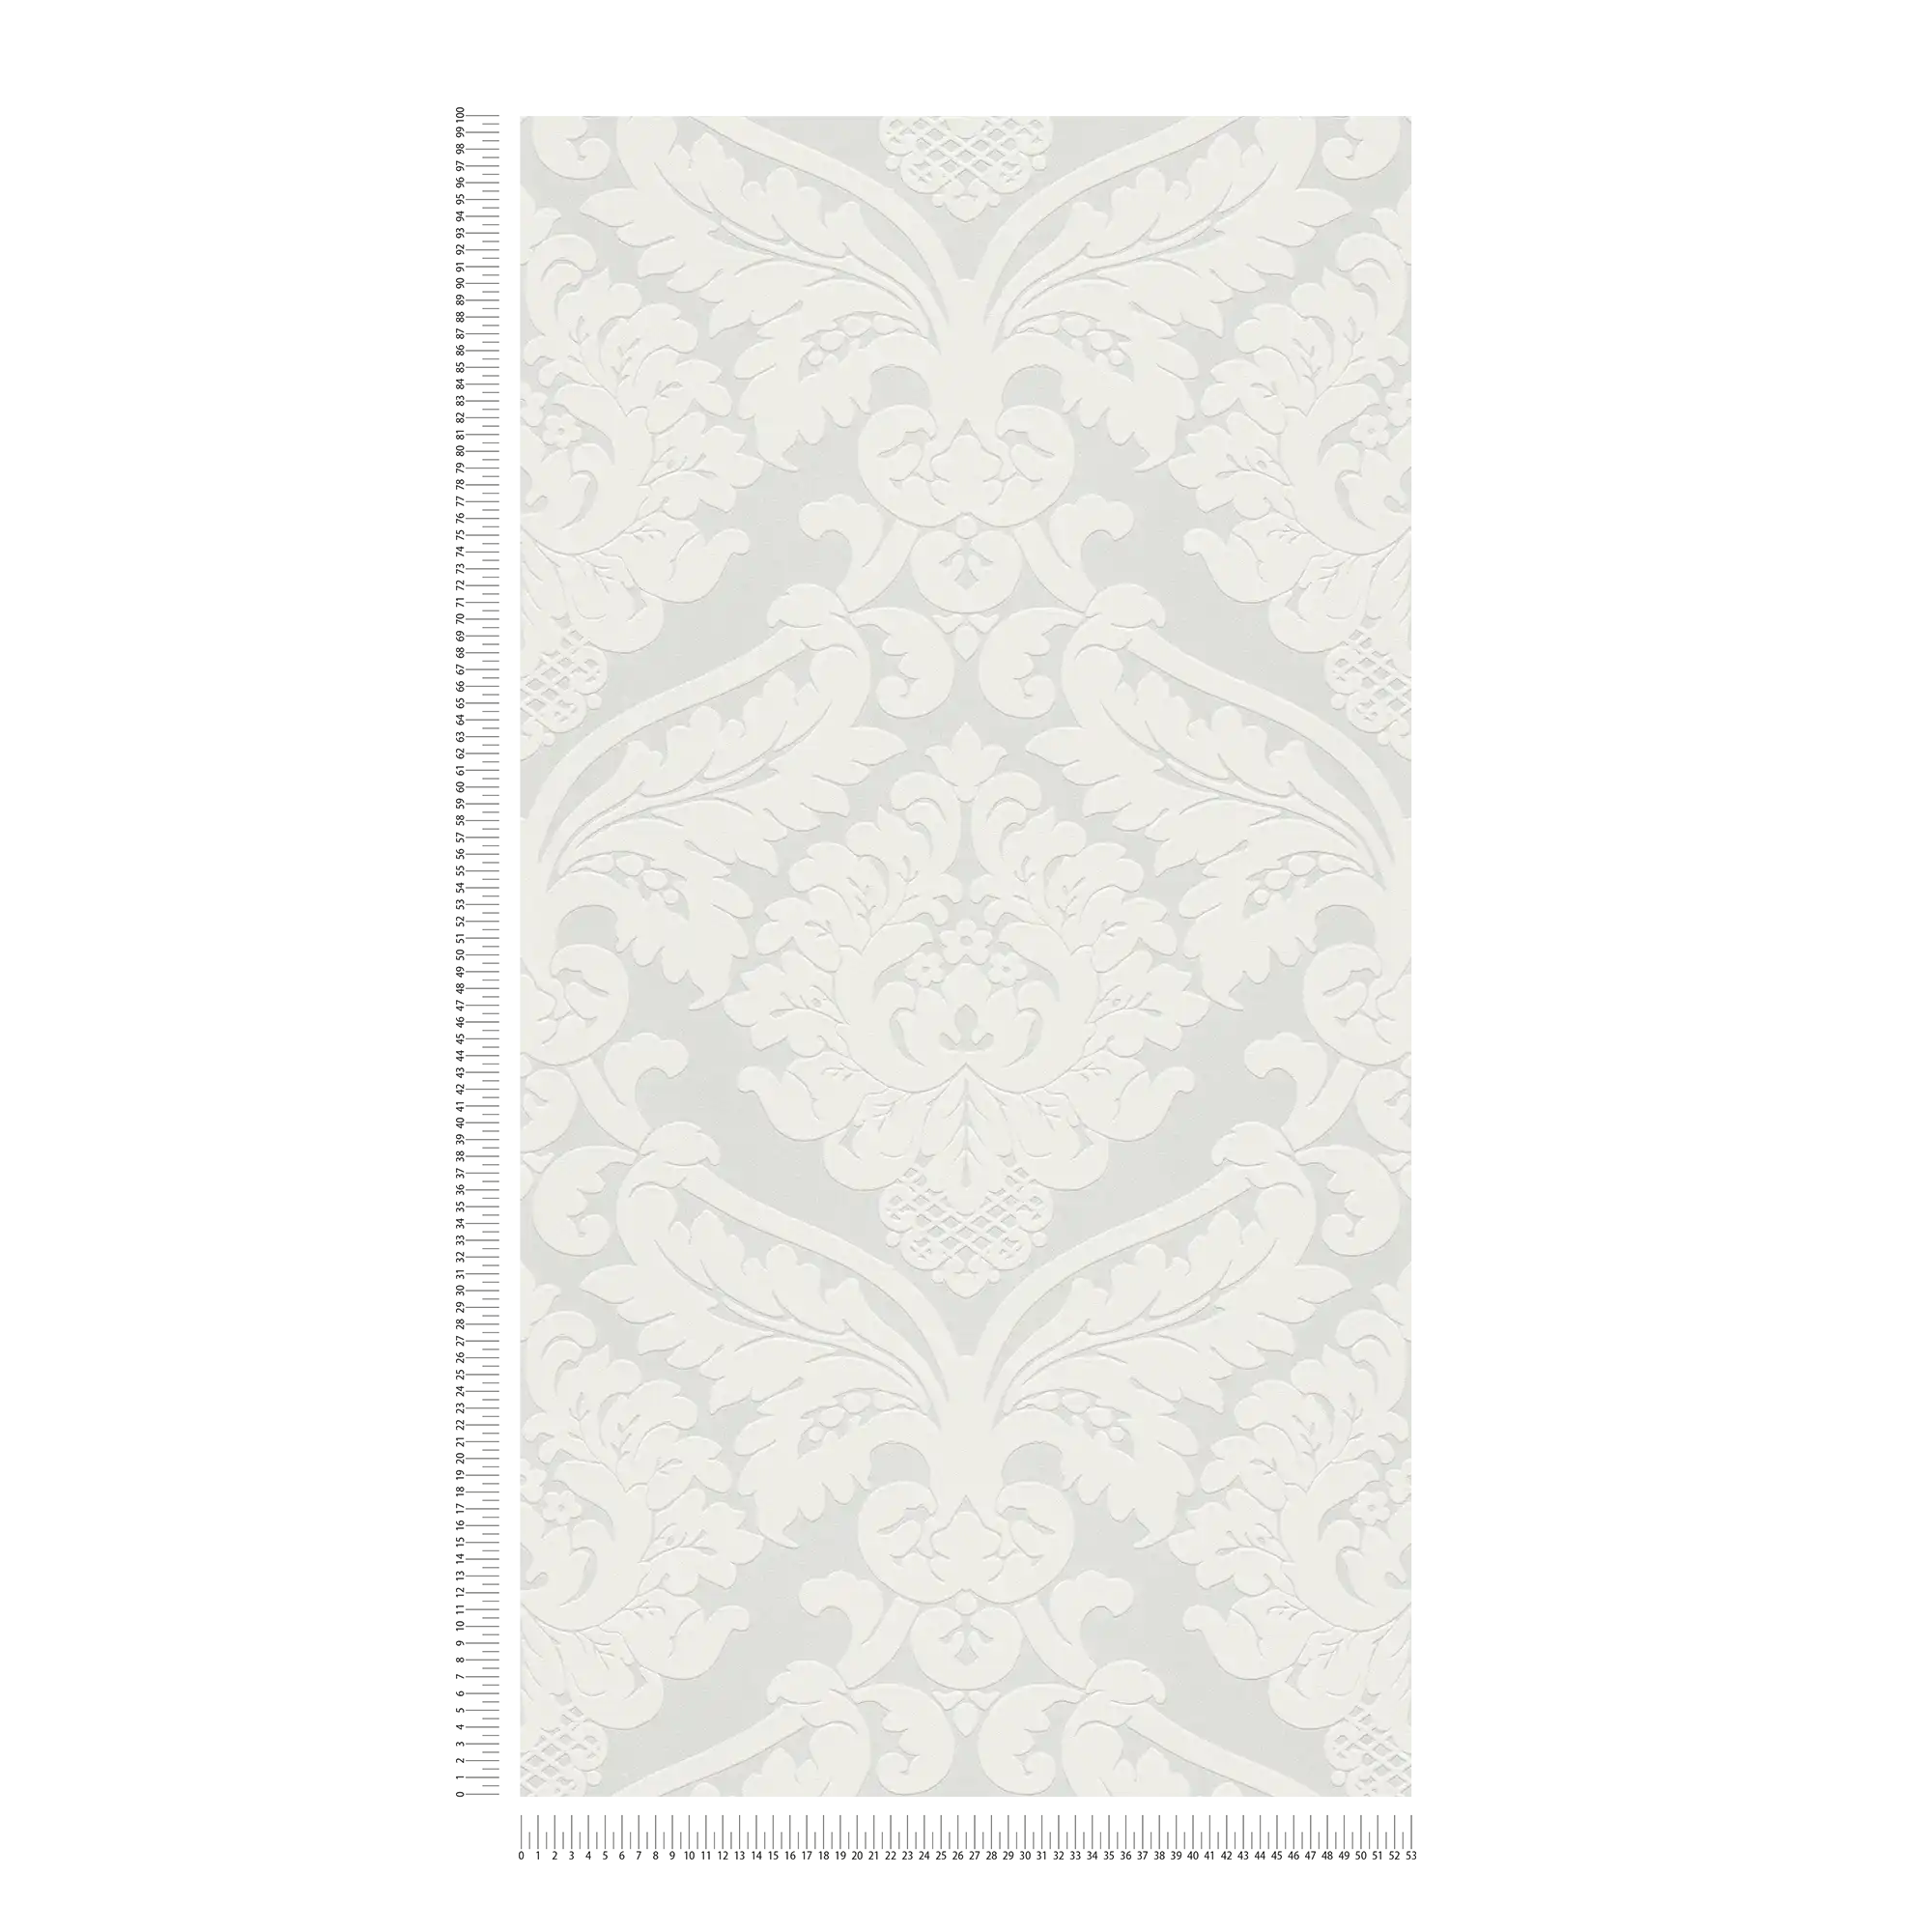             Carta da parati barocca con ornamento floreale 3D - metallizzata, bianca
        